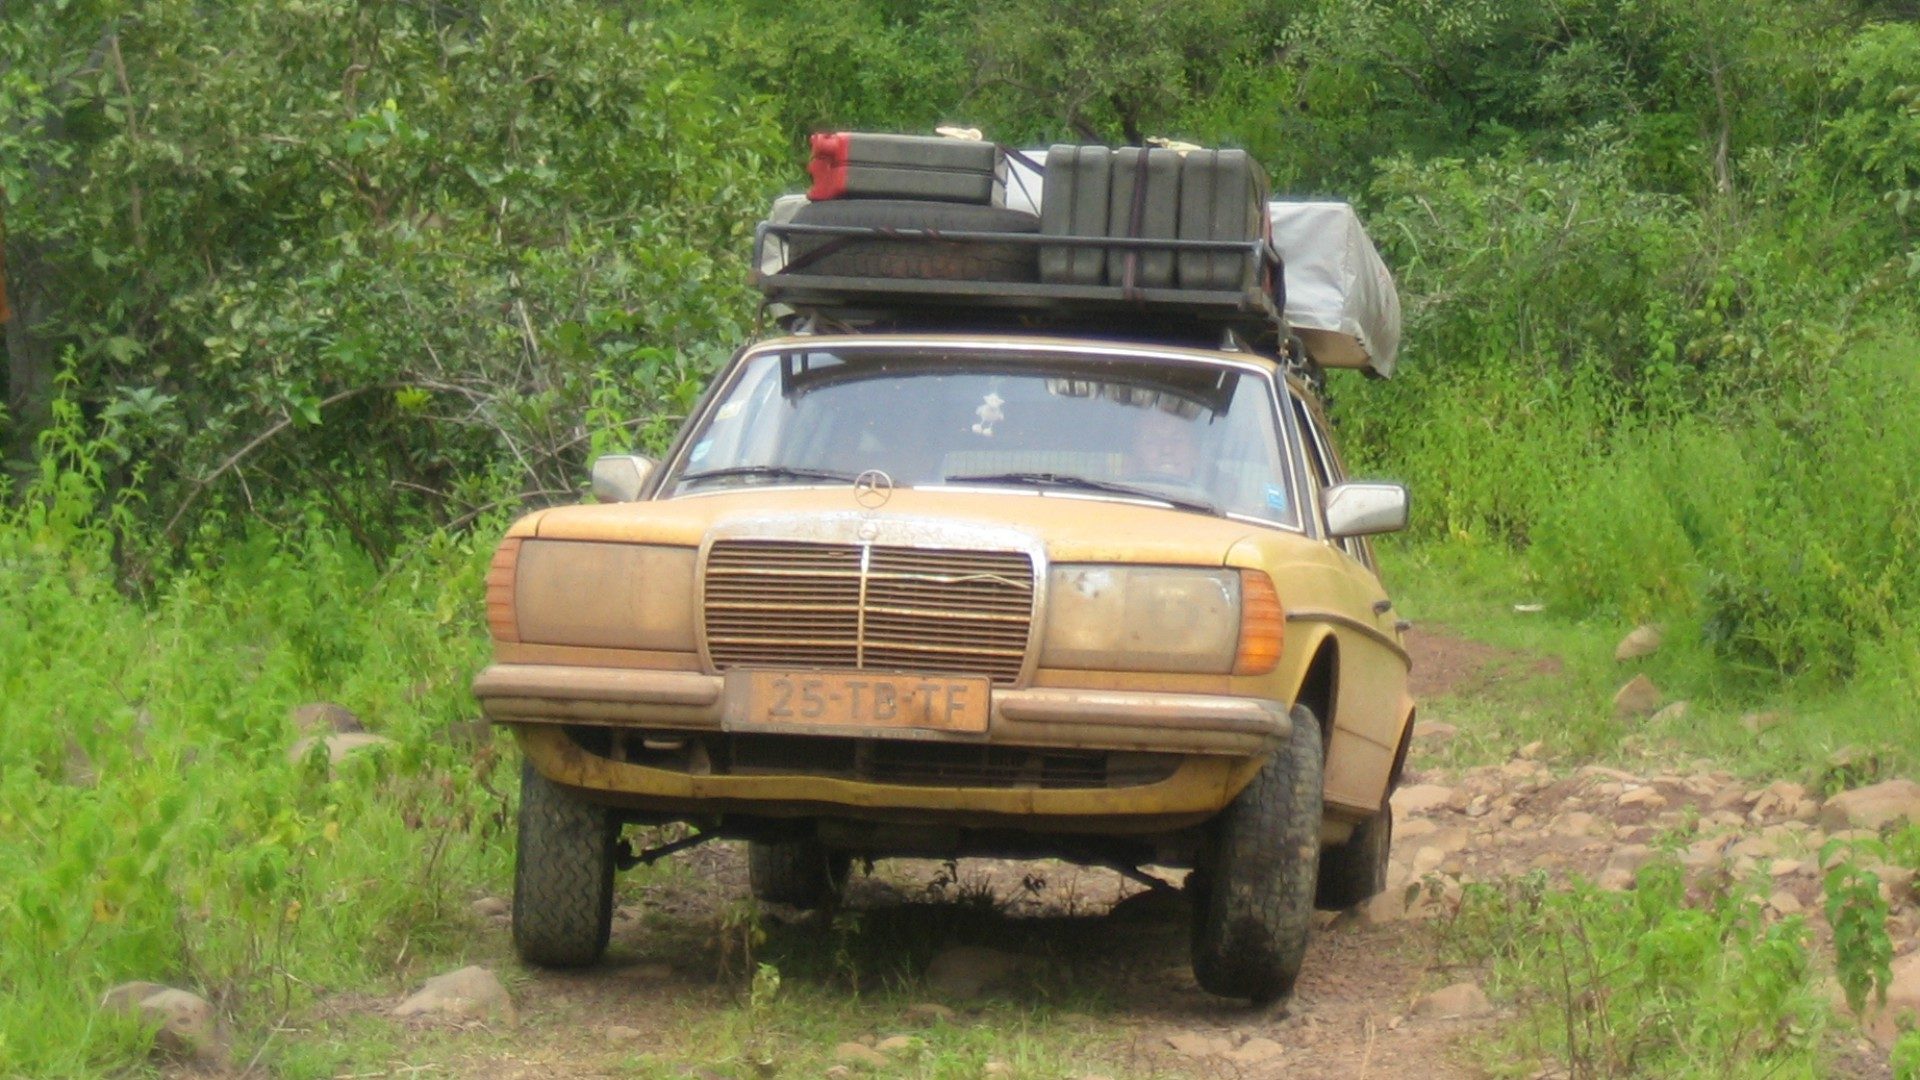 Les ravisseurs ont stoppé le véhicule du Père Ngango (Photo d'illustration: Jurgen/Flickr/CC BY 2.0)